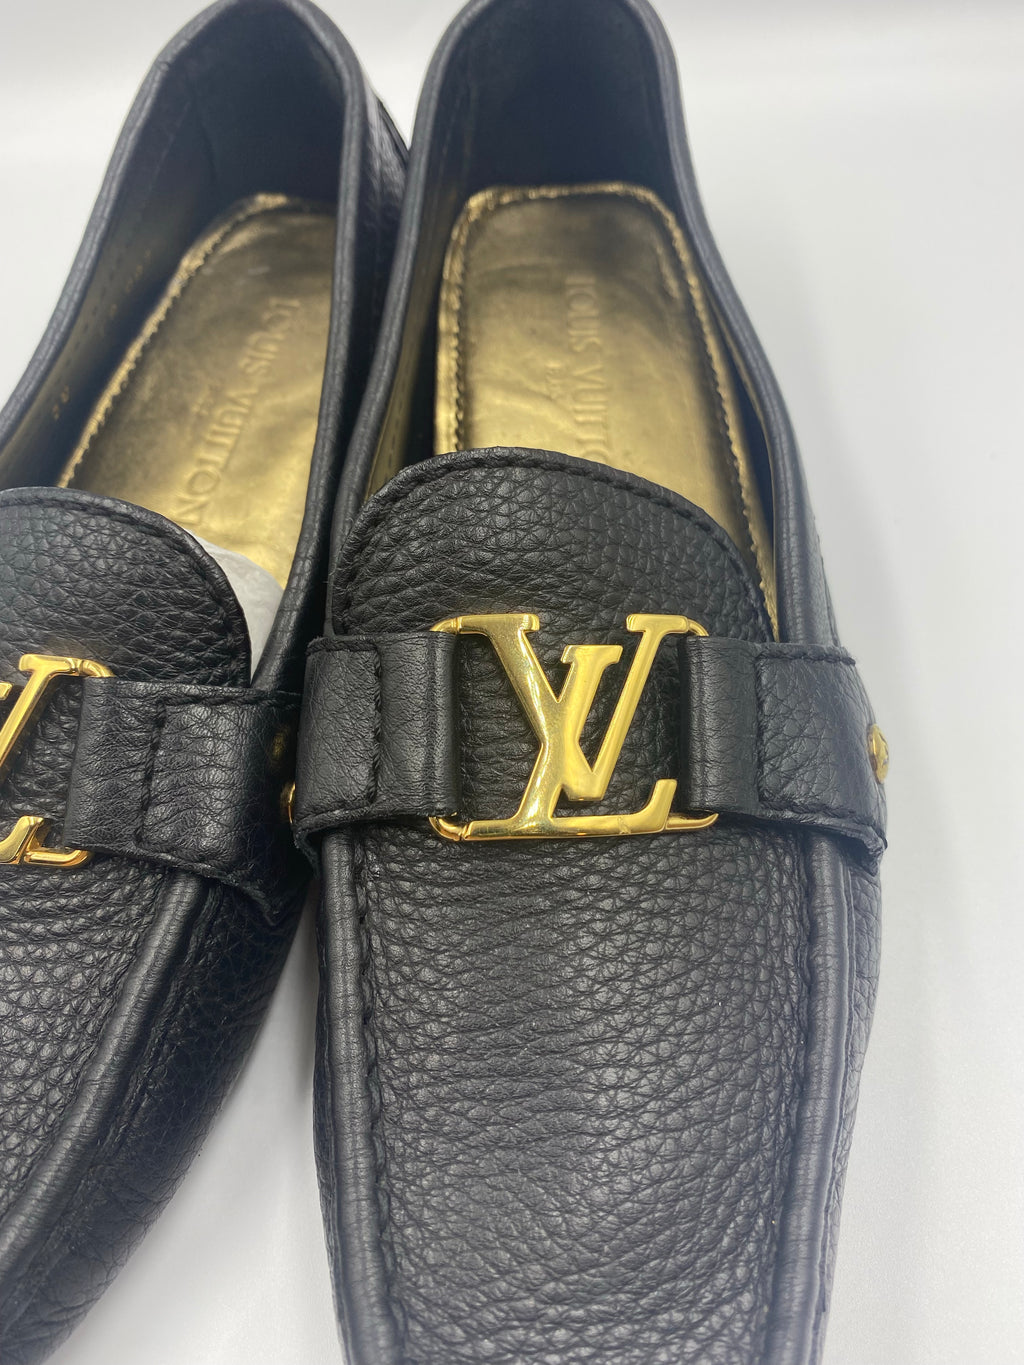 Louis Vuitton, Shoes, Rare Louis Vuitton Moccasin Loafers